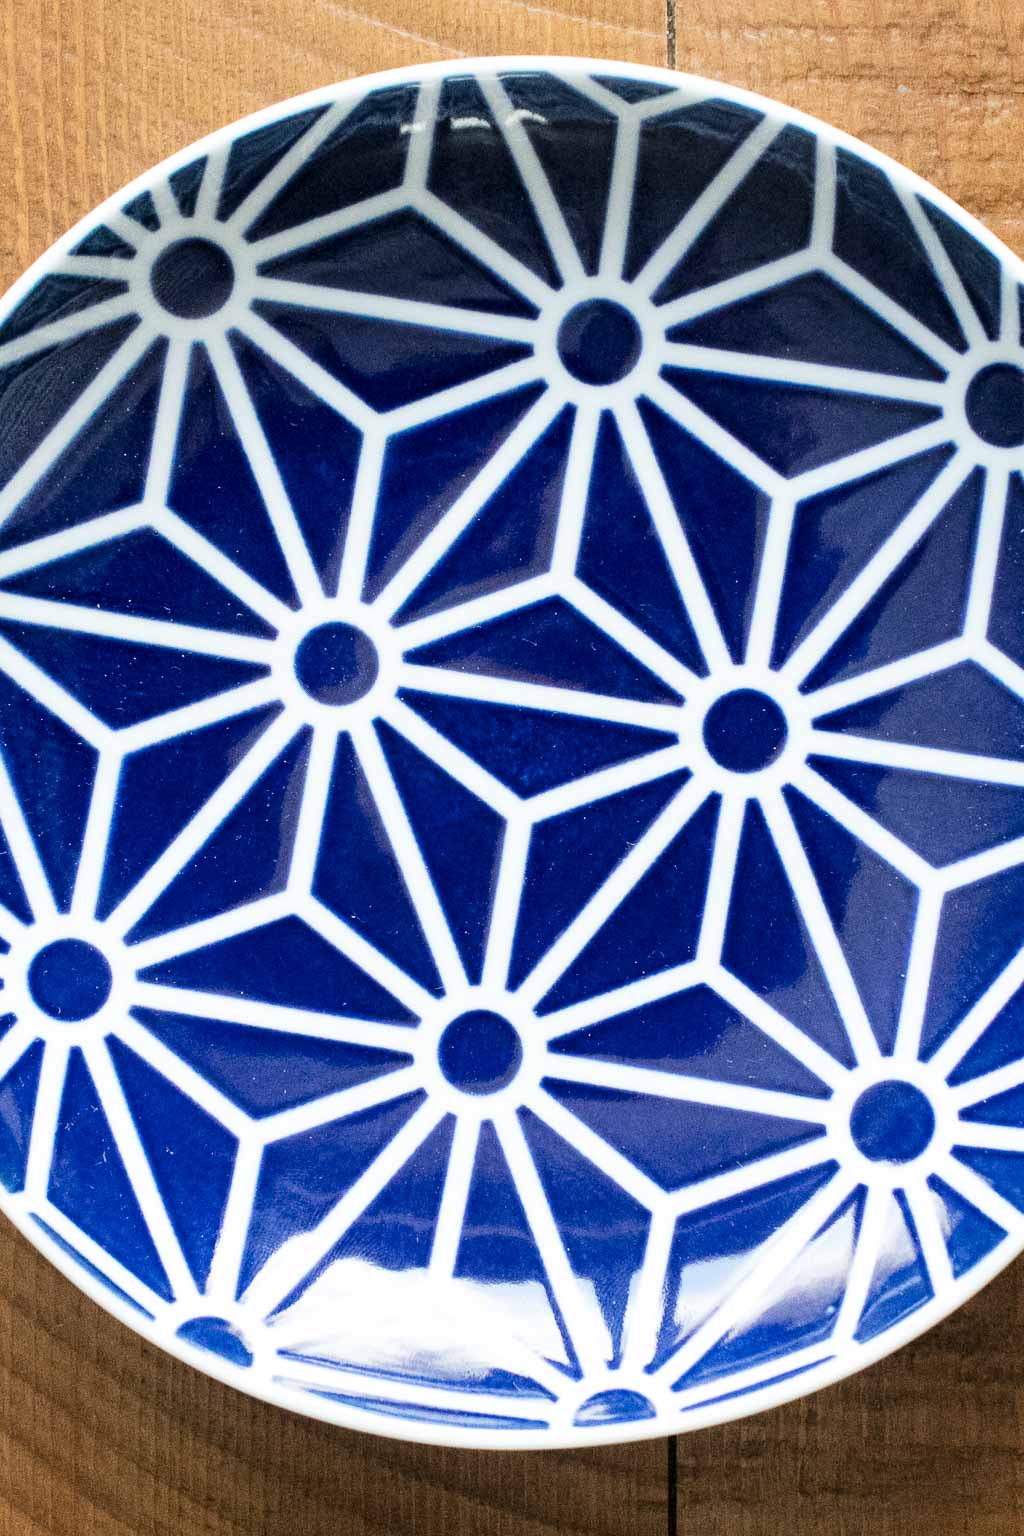 Kihara Porcelain Toronto